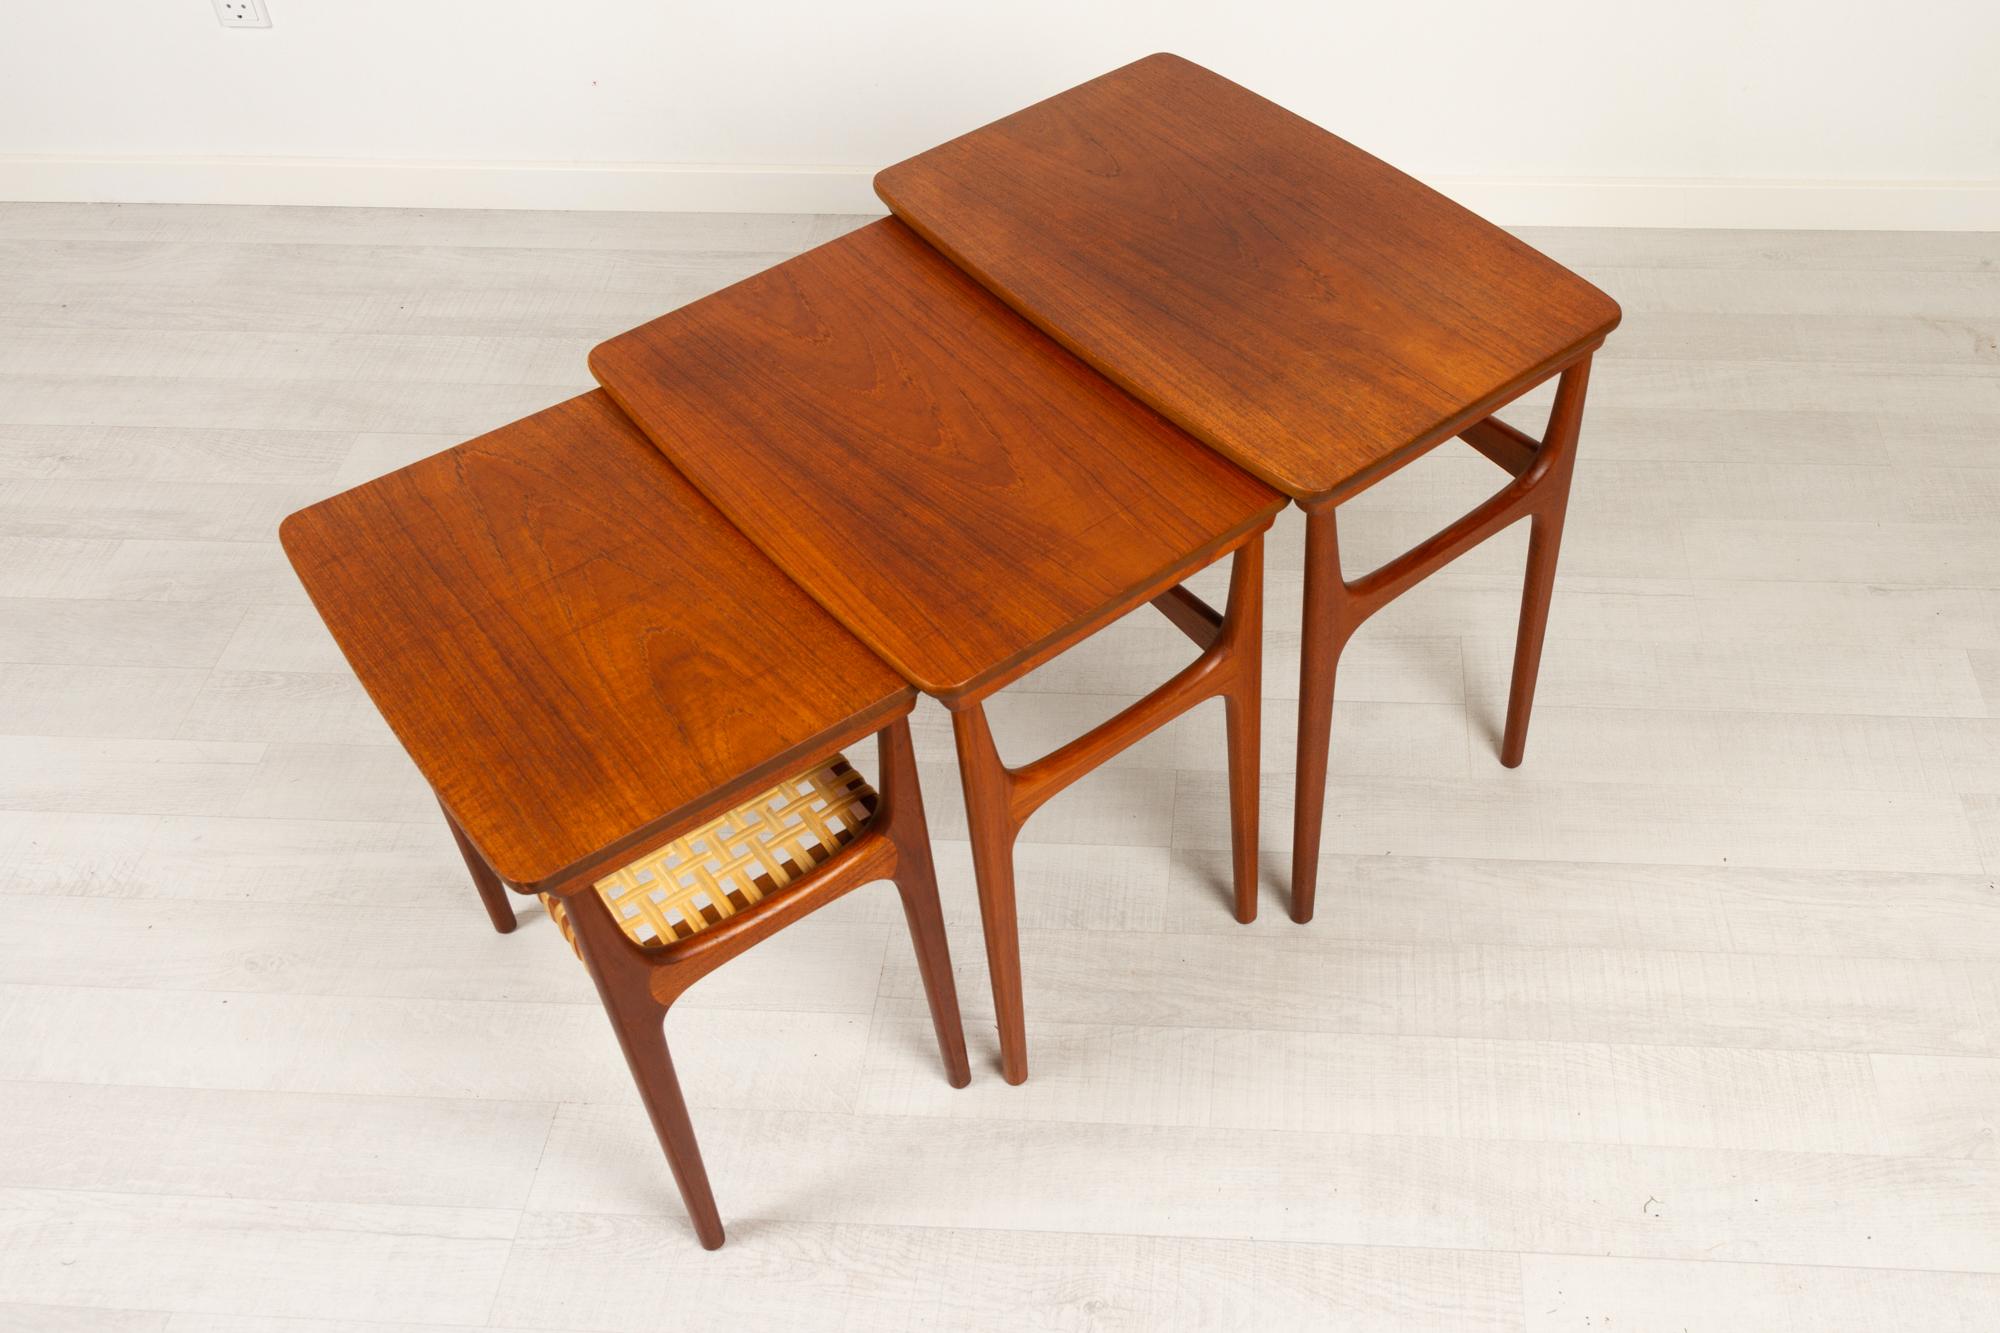 Vintage Danish Teak Nesting Tables by Erling Torvits for Heltborg Møbler 1950s For Sale 1